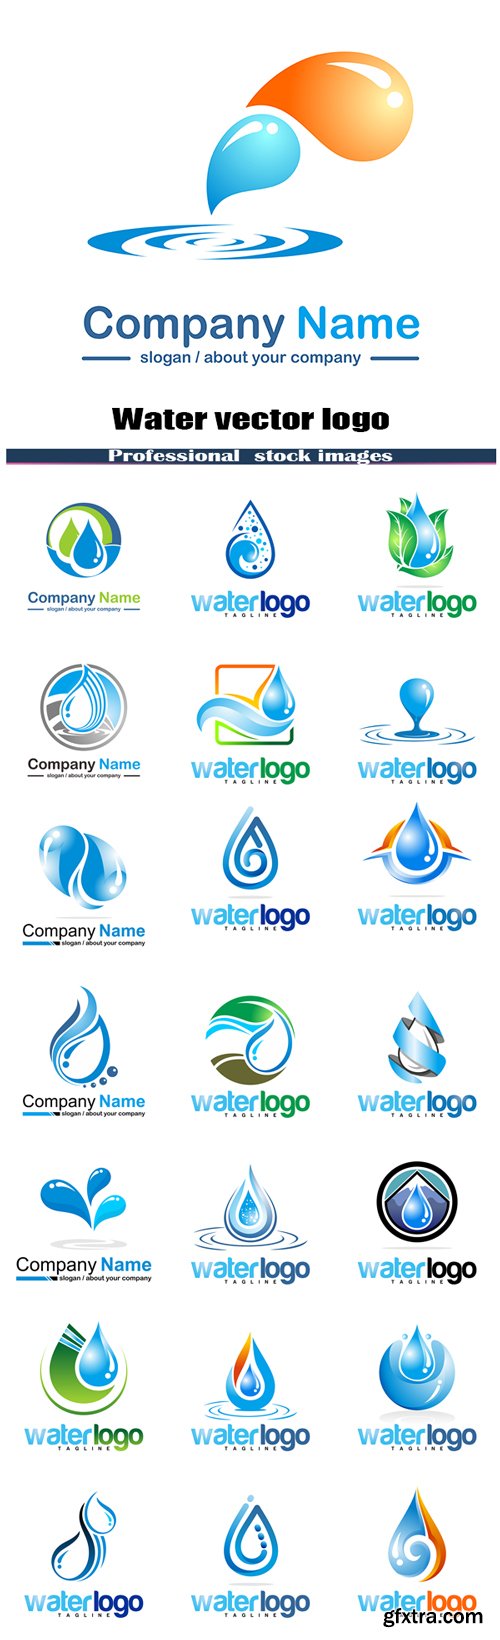 Water vector logo #3